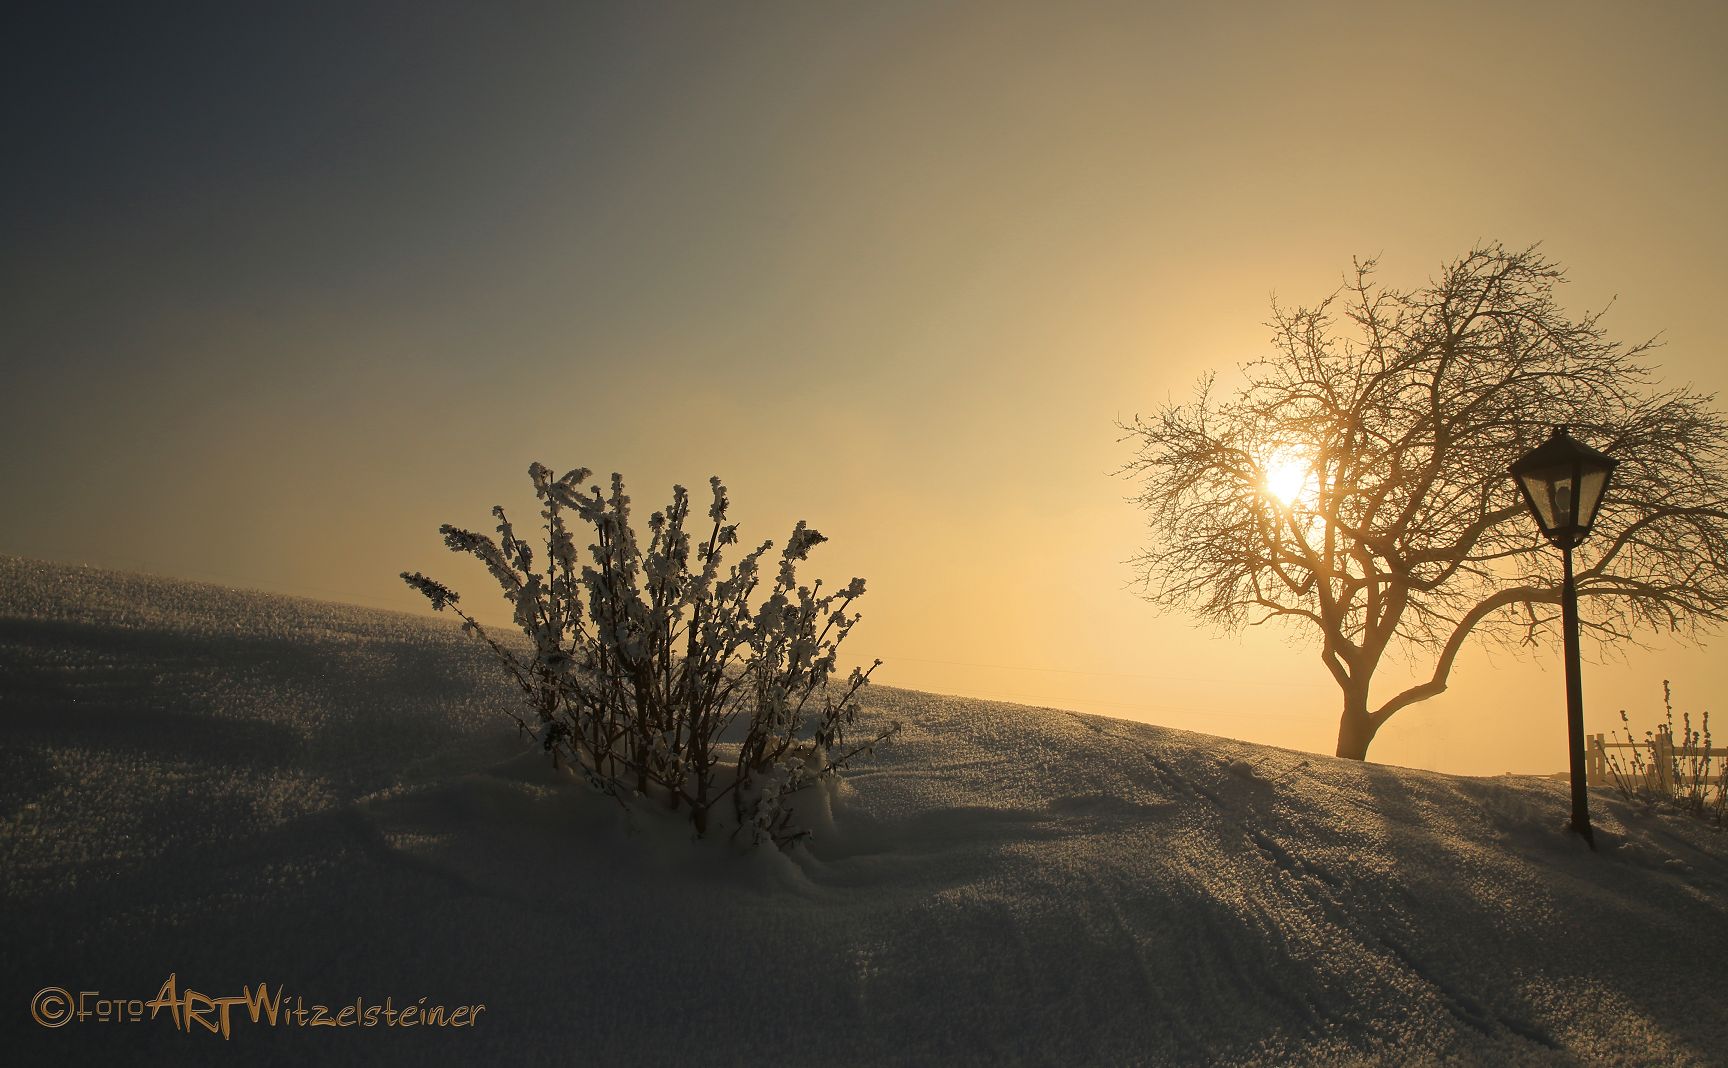 Winterzeit-Fotos-Peter-Witzelsteiner6